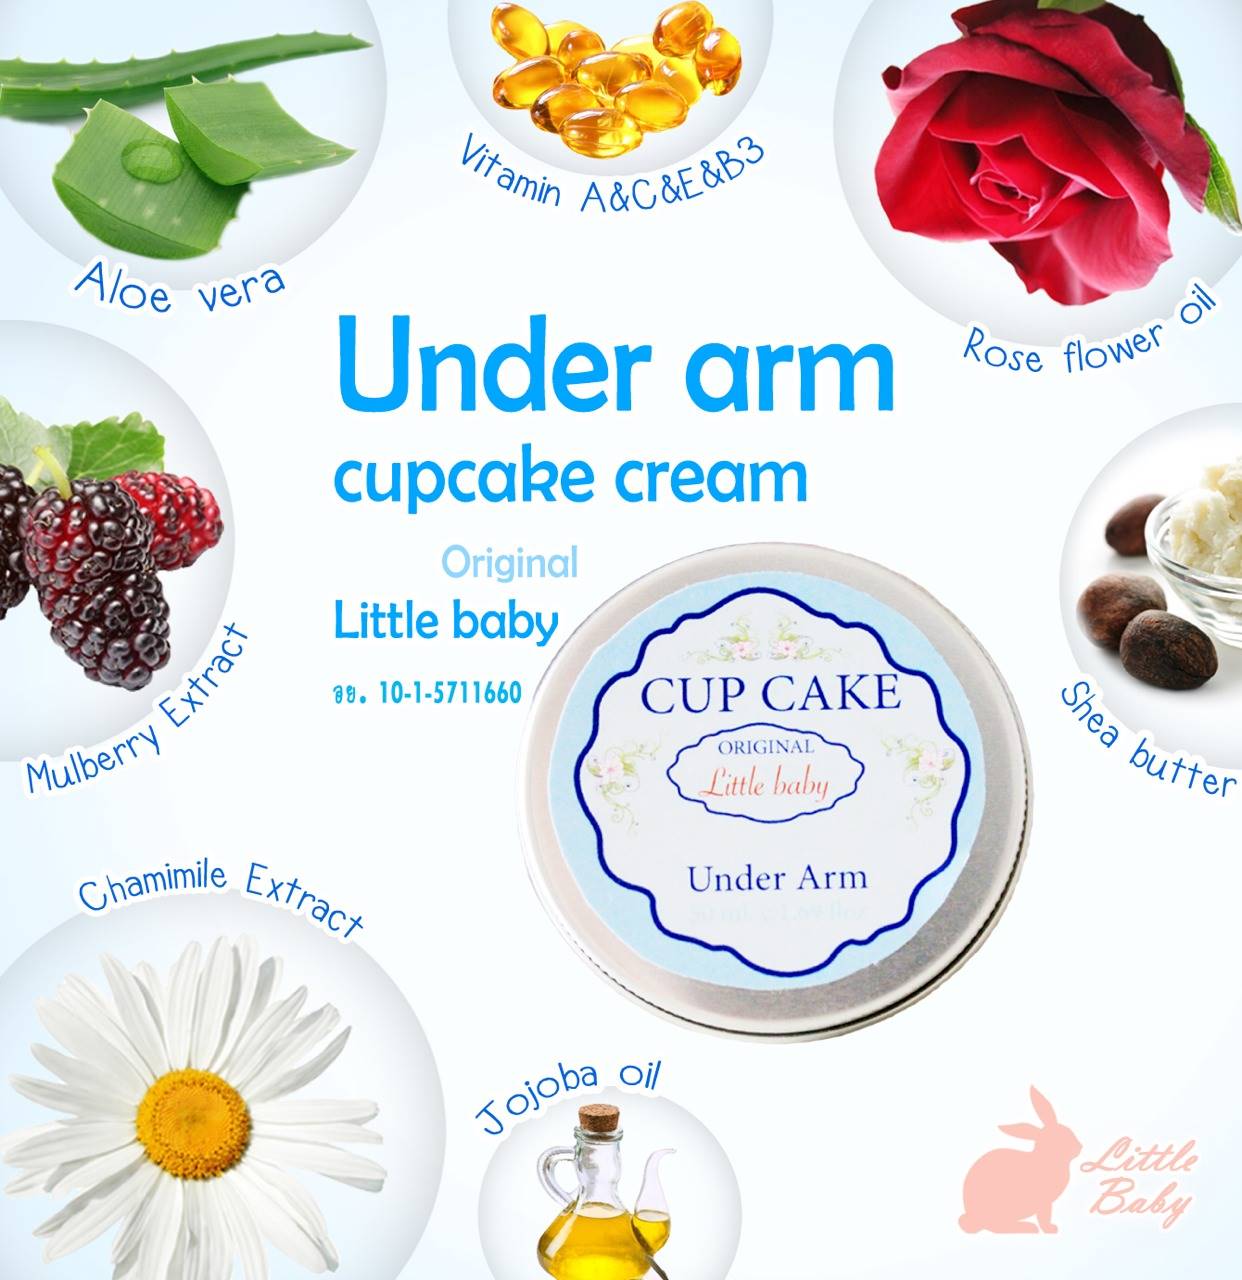 ปัญหารักแร้ดํา, รักแร้ดํา, รักแร้ดํา pantip, รักแร้ดํา หนังไก่, รักแร้ดํา ใช้อะไรดี, รักแร้ดํา ทำไงดี, พาสเจล, พาสเจล รักแร้, พาสเจล รักแร้ขาว, Cup Cake Under Arm, Under Arm  Cupcake cream, Cup Cake cream